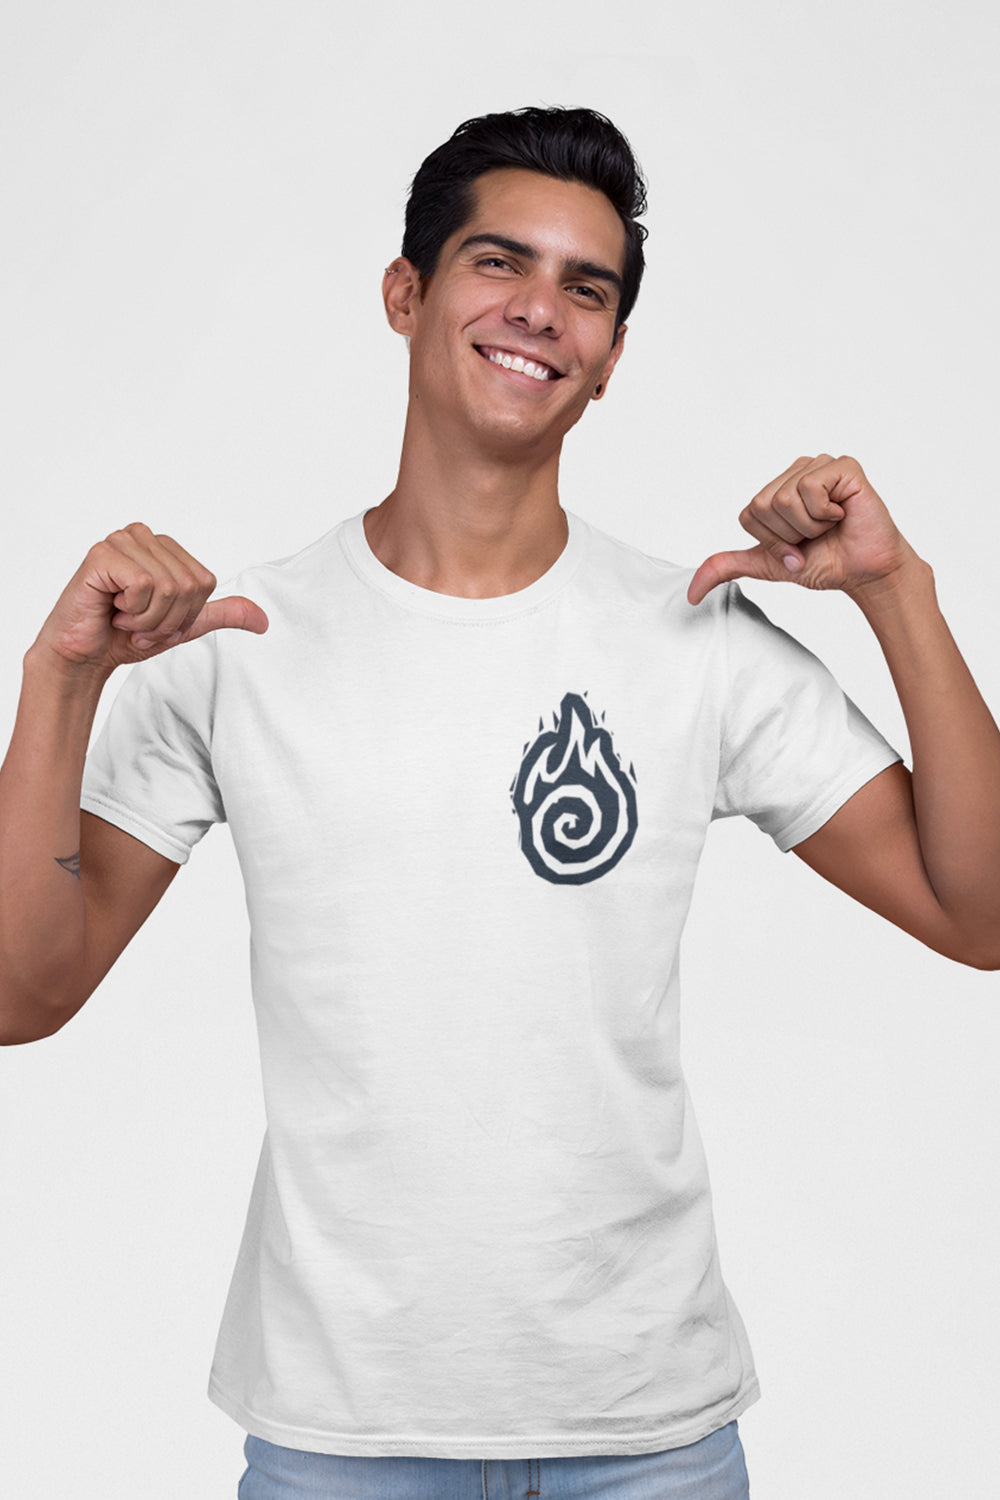 Flame Graphic Printed White Tshirt